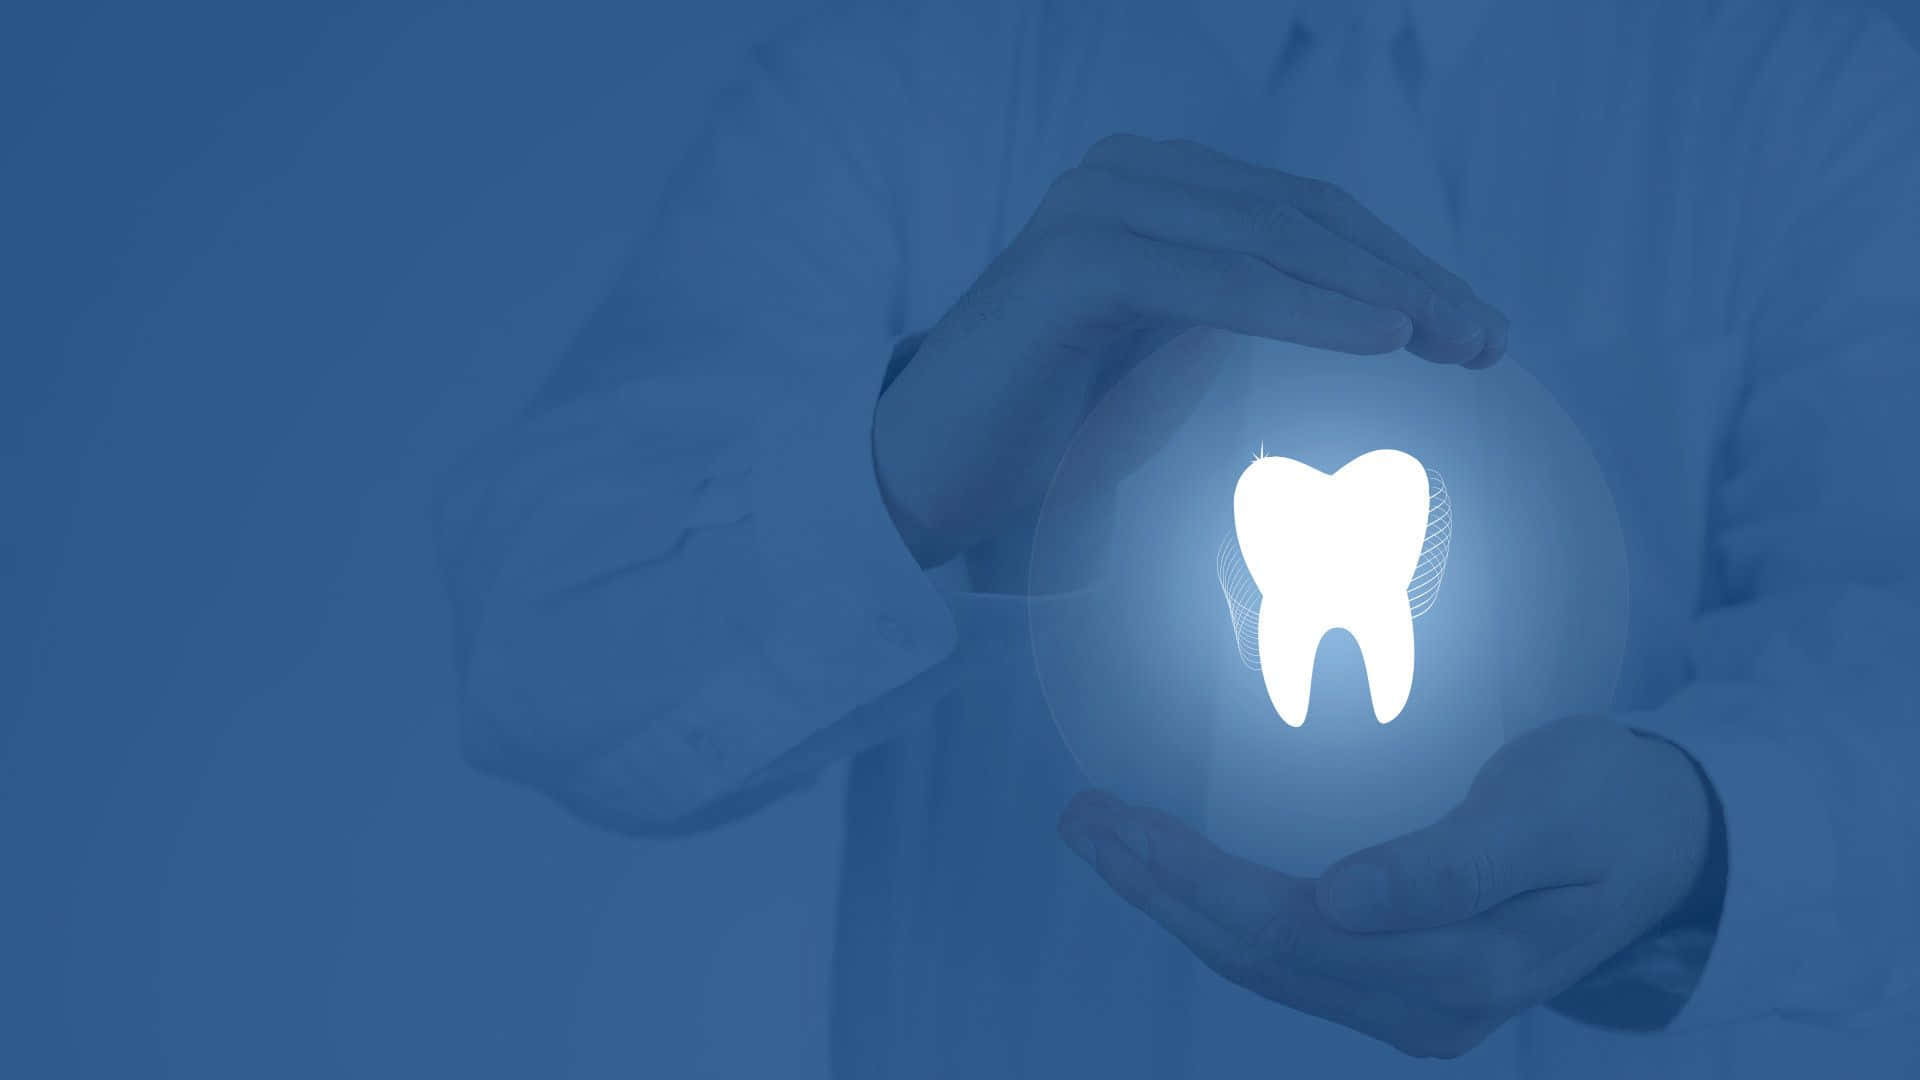 Einegesunde Zahnhygiene Und Ein Ästhetisch Ansprechendes Lächeln Durch Zahnmedizin Aufrechterhalten.